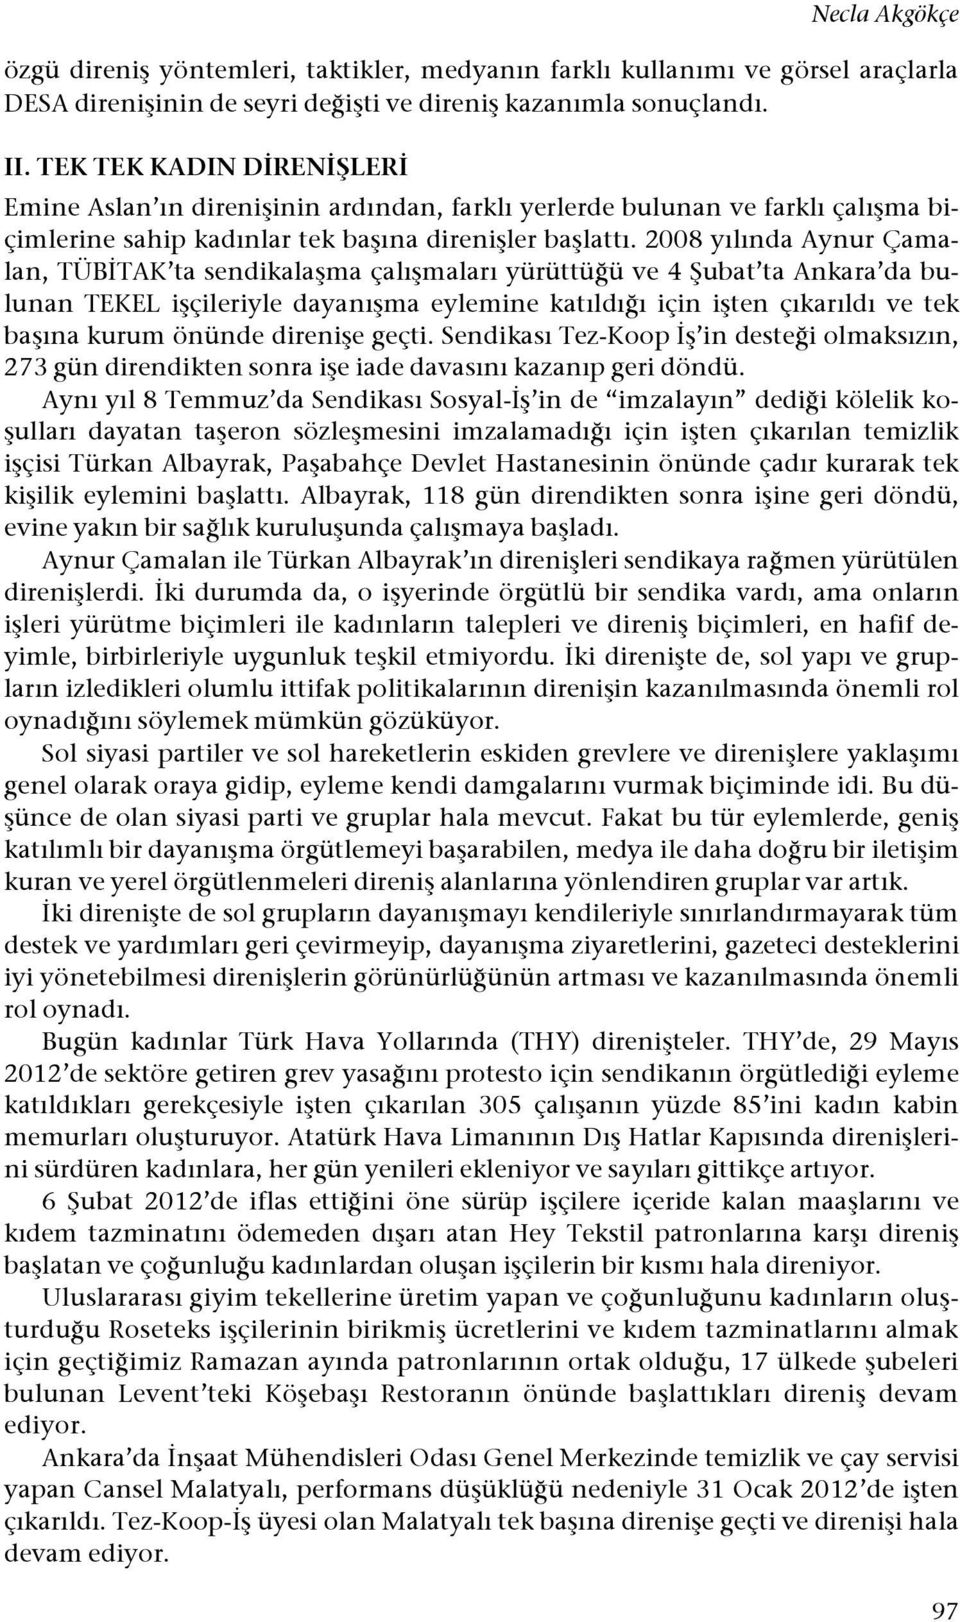 2008 yılında Aynur Çamalan, TÜB"TAK ta sendikala#ma çalı#maları yürüttü!ü ve 4 $ubat ta Ankara da bulunan TEKEL i#çileriyle dayanı#ma eylemine katıldı!